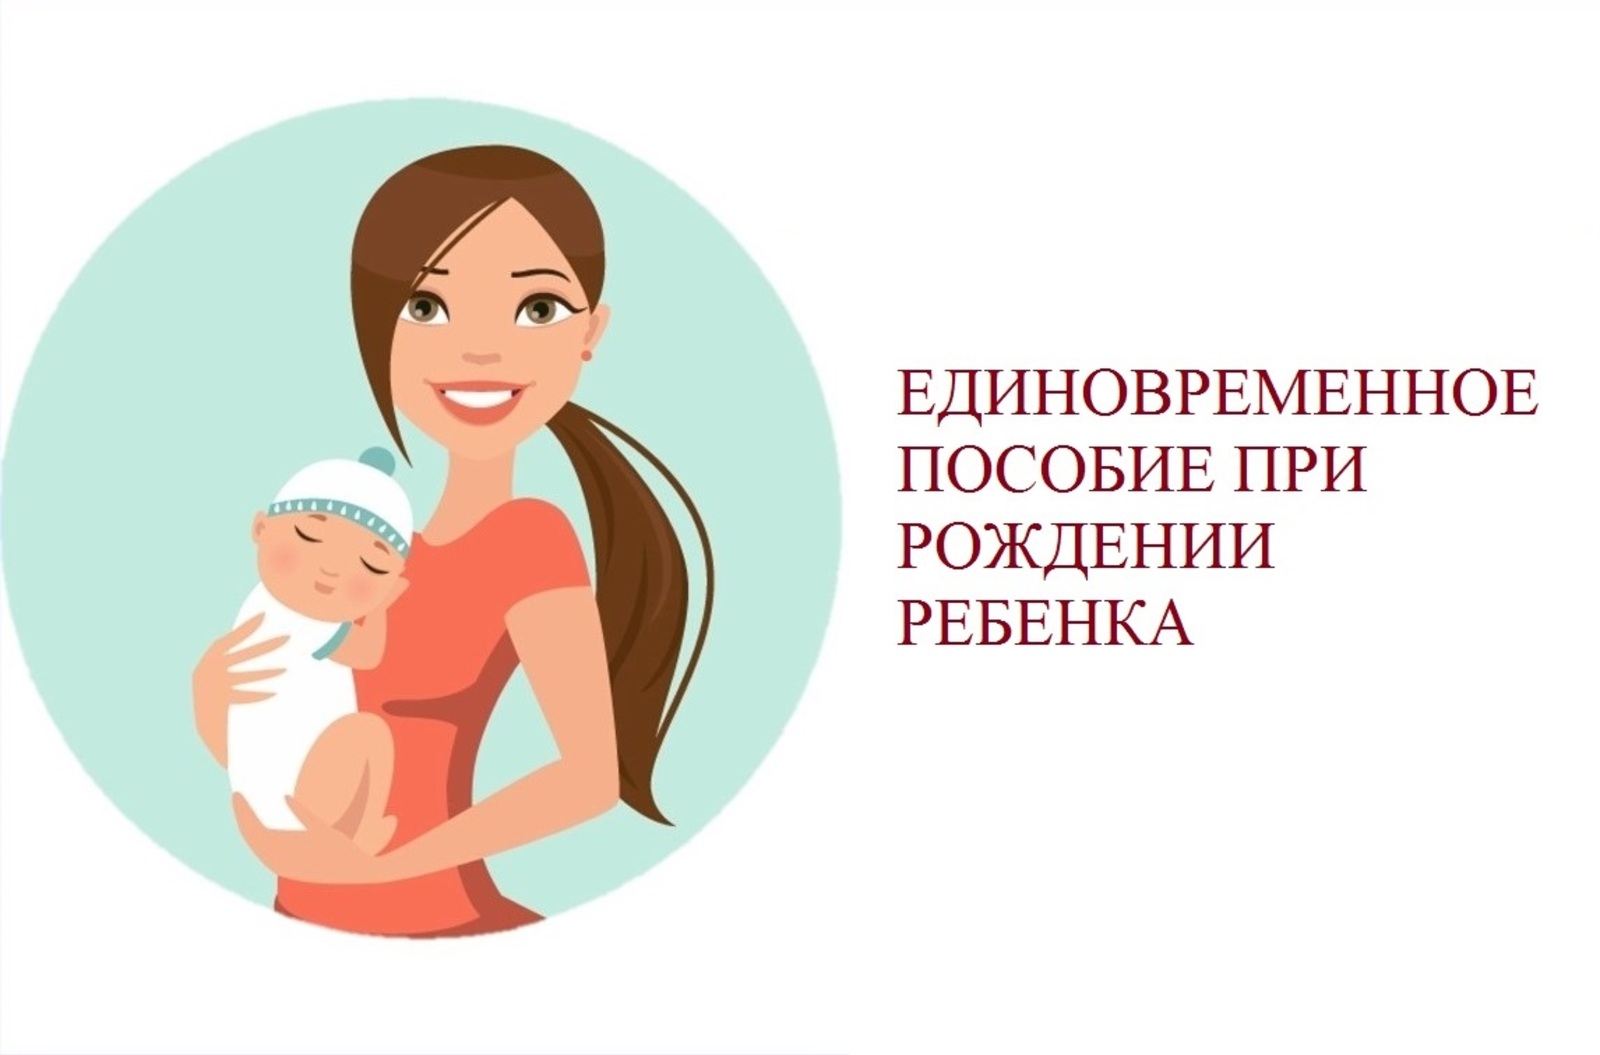 Более 28 тысяч семей Республики Башкортостан в прошлом году получили единовременное пособие при рождении ребенка